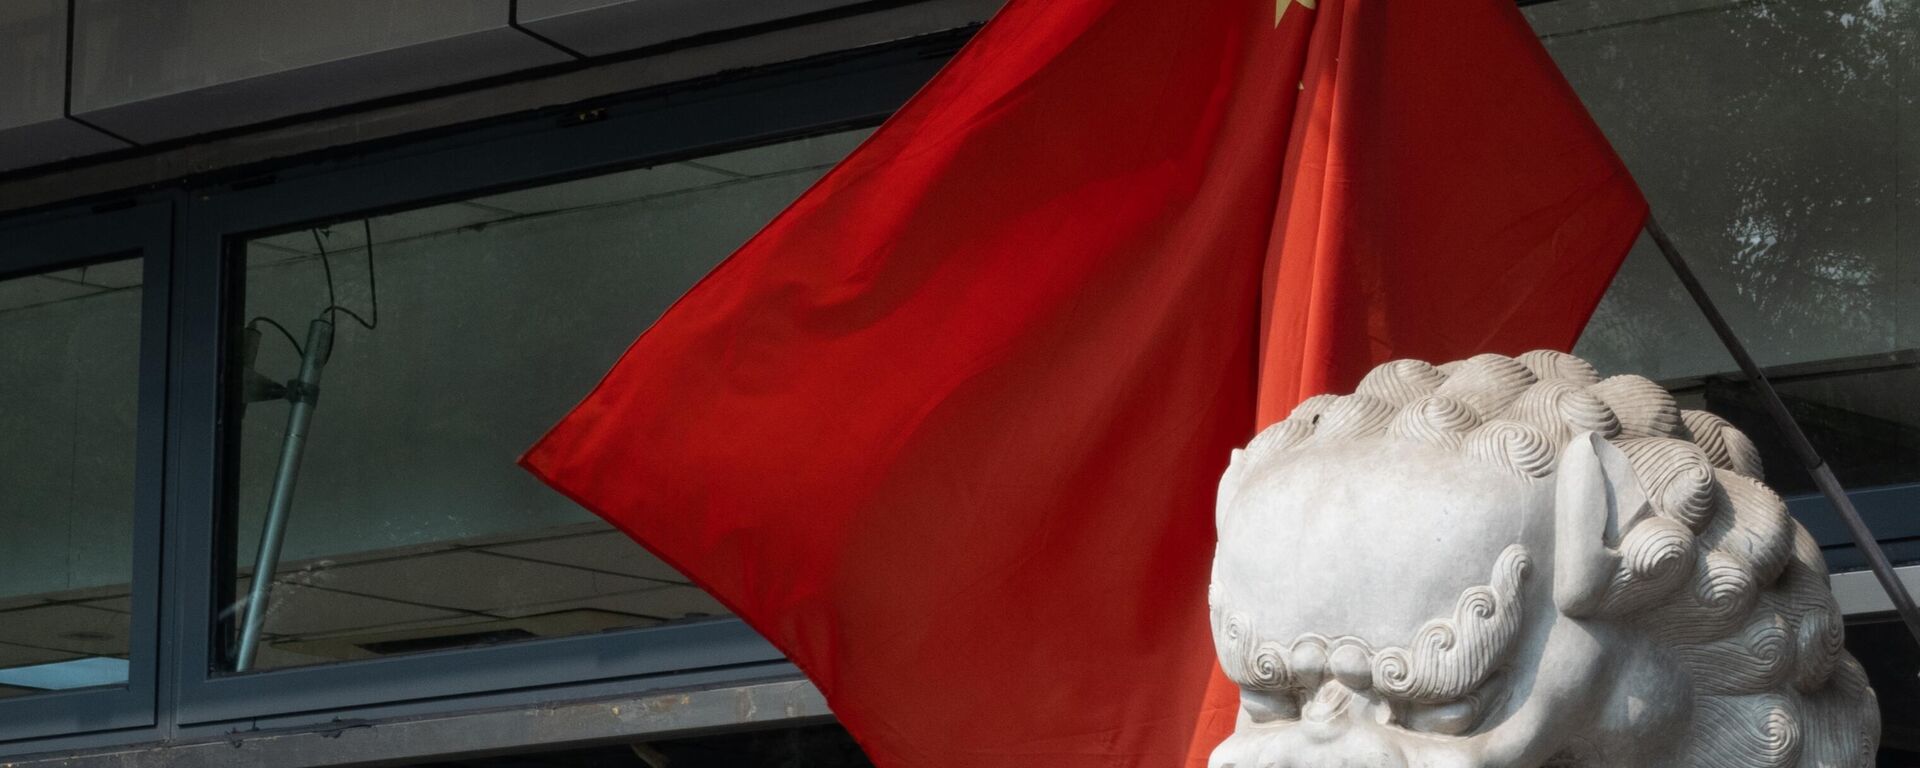 در حالی که شهر برای بیستمین کنگره ملی حزب کمونیست چین در پکن آماده می شود، پرچم های ملی چین را در خیابان های منطقه قدیمی نشان می دهد - Sputnik International 1920 11/04/2023